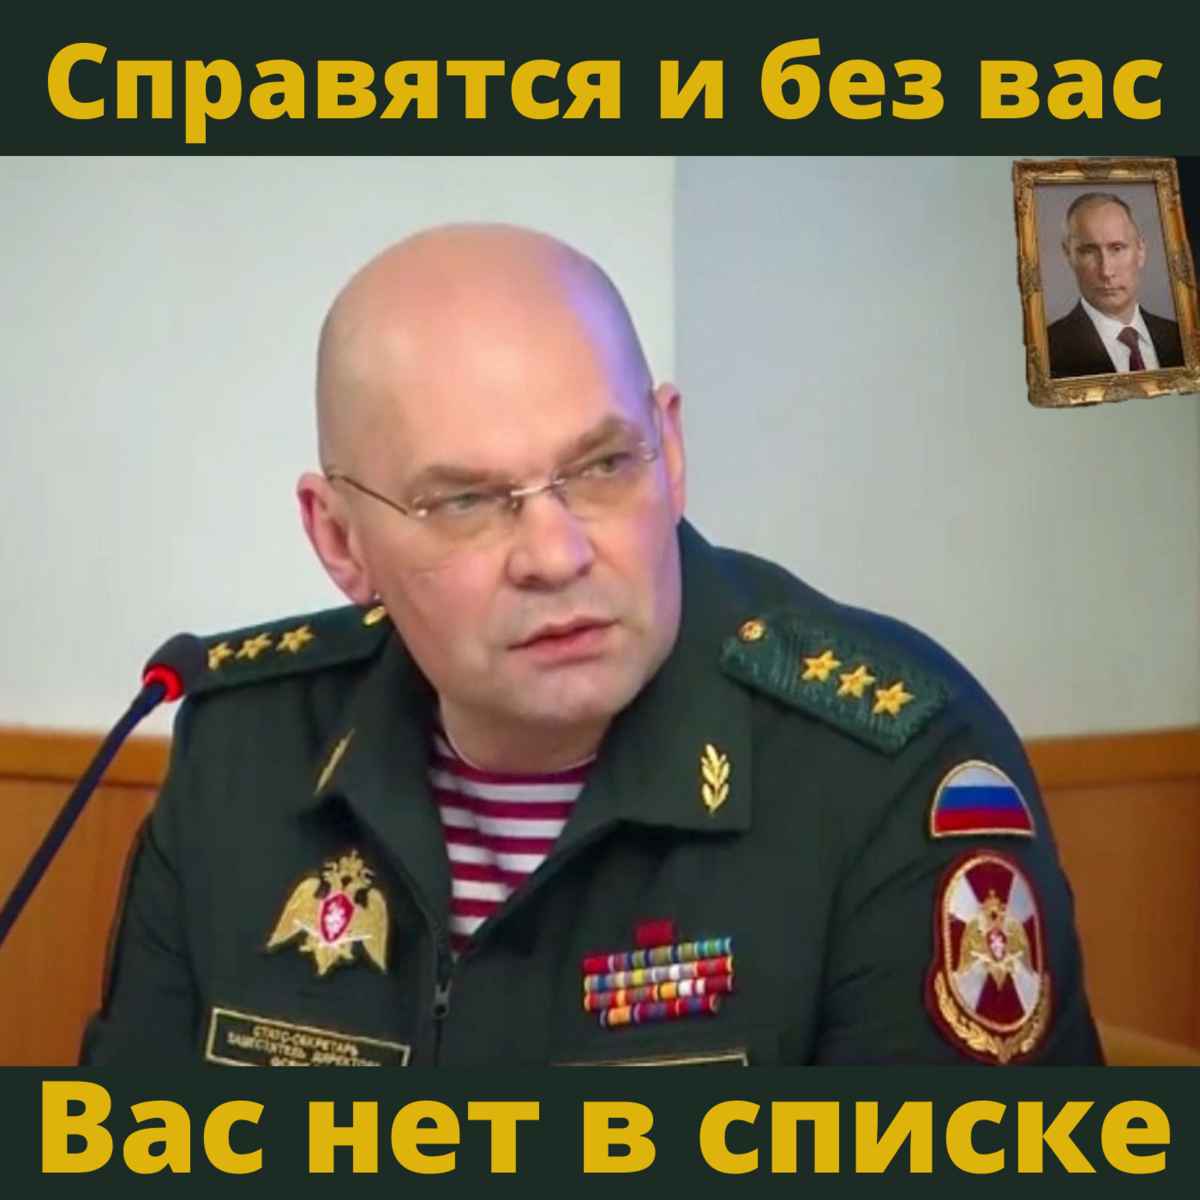 Начальник службы информации. Генерал Кузьменков Росгвардия.